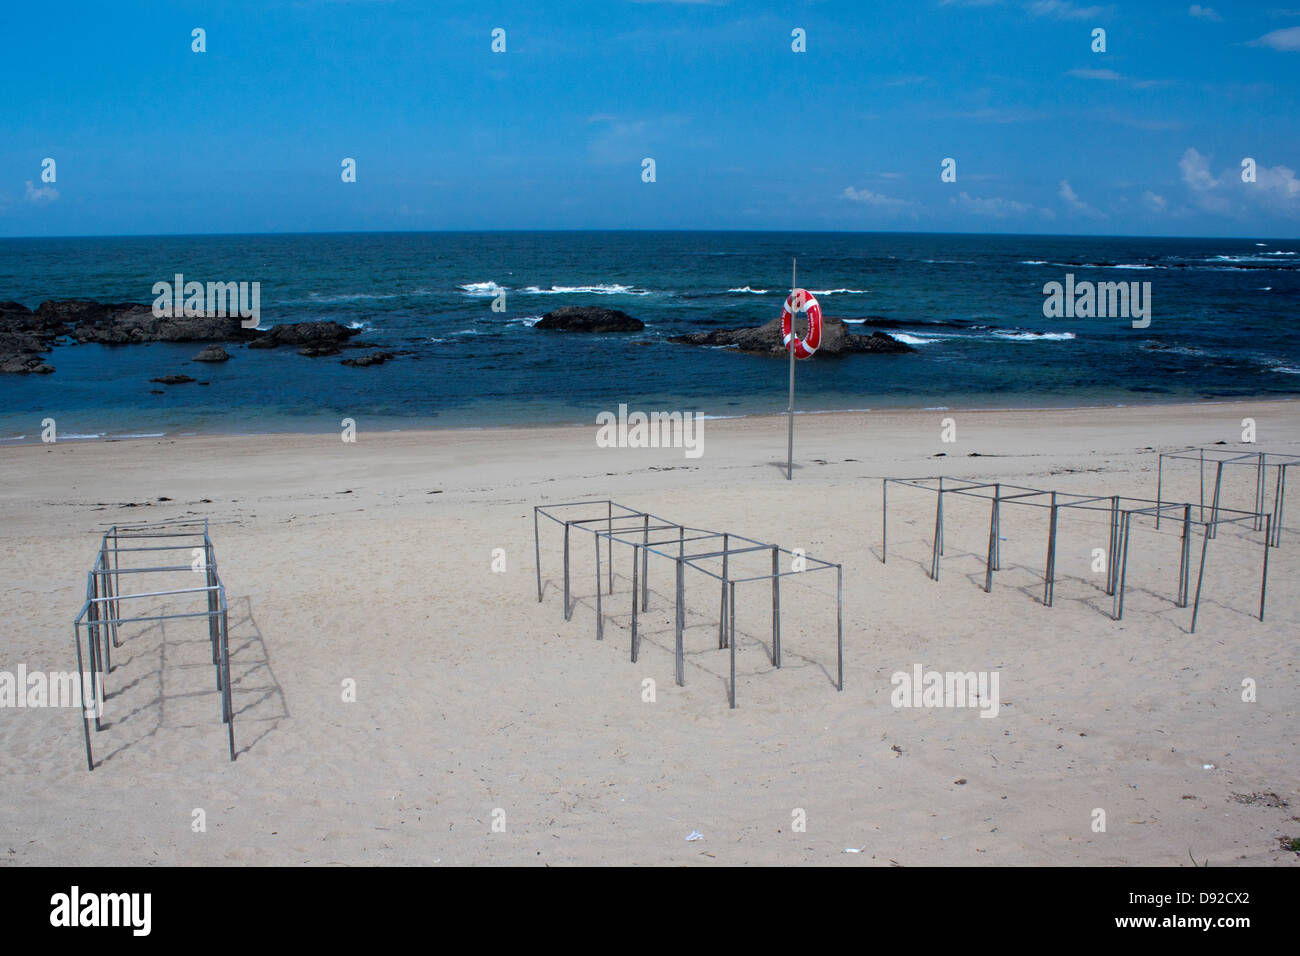 Seelandschaft der Saison Strand, zeigt die Strand und Kabine Strukturen Stockfoto